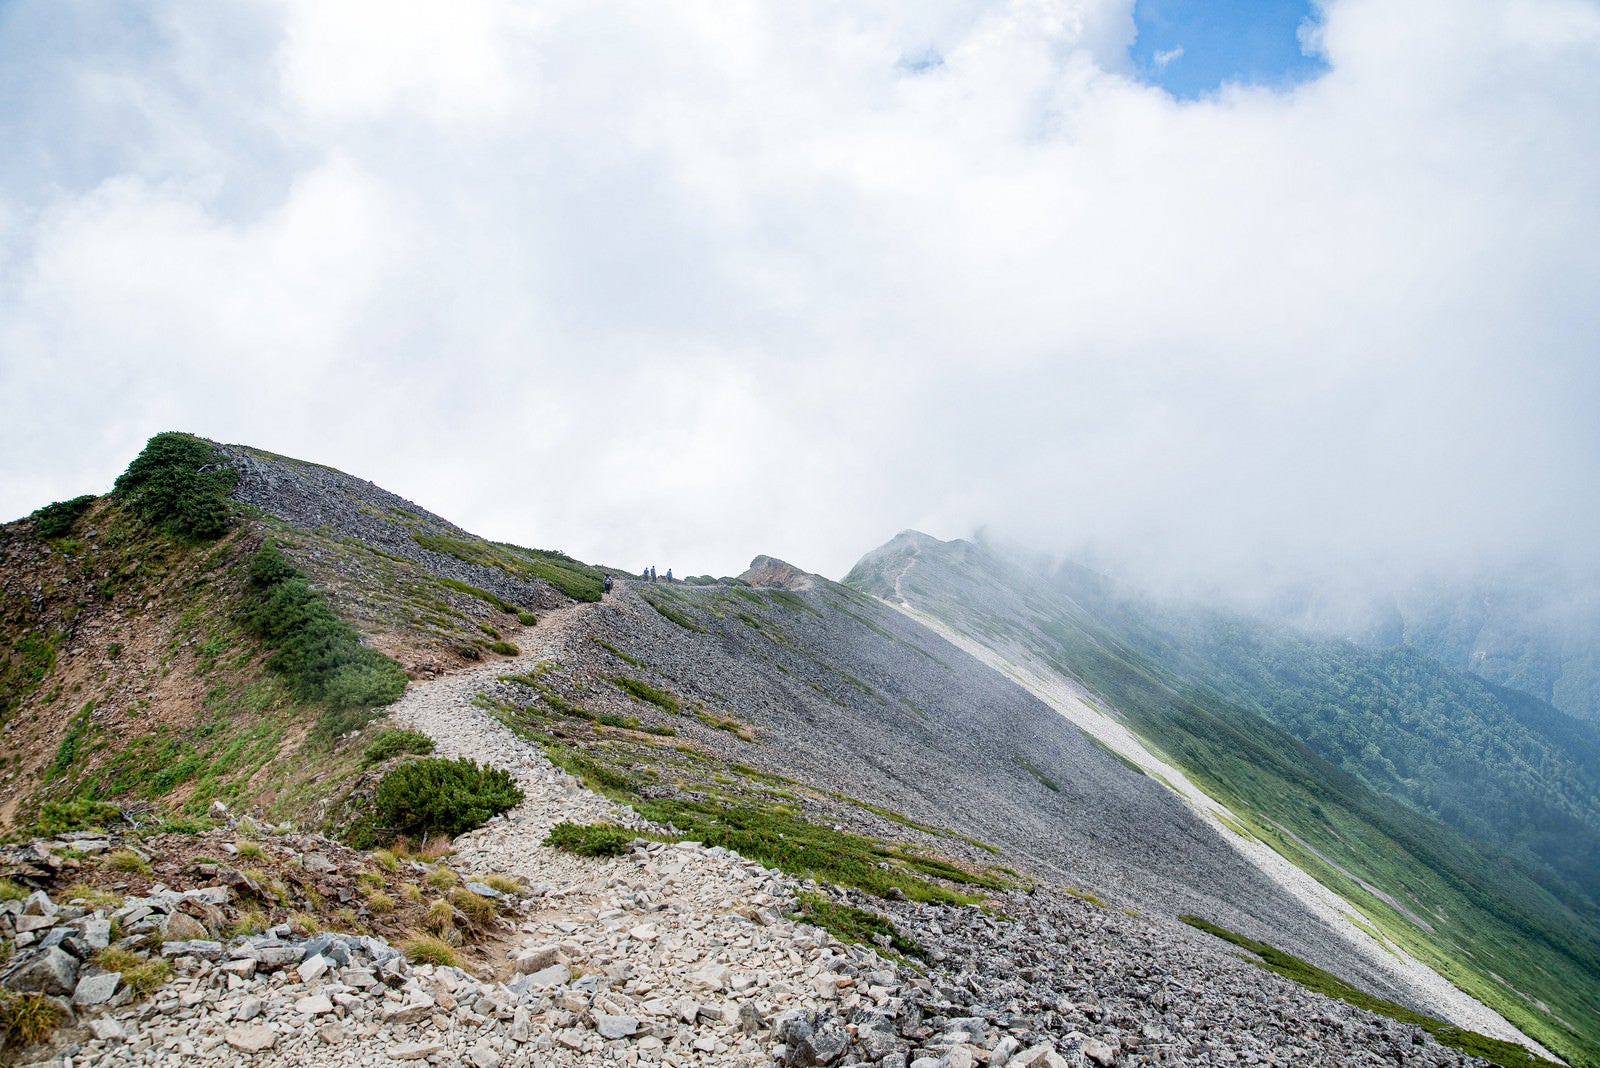 「雲の中に消えゆく登山者と稜線」の写真